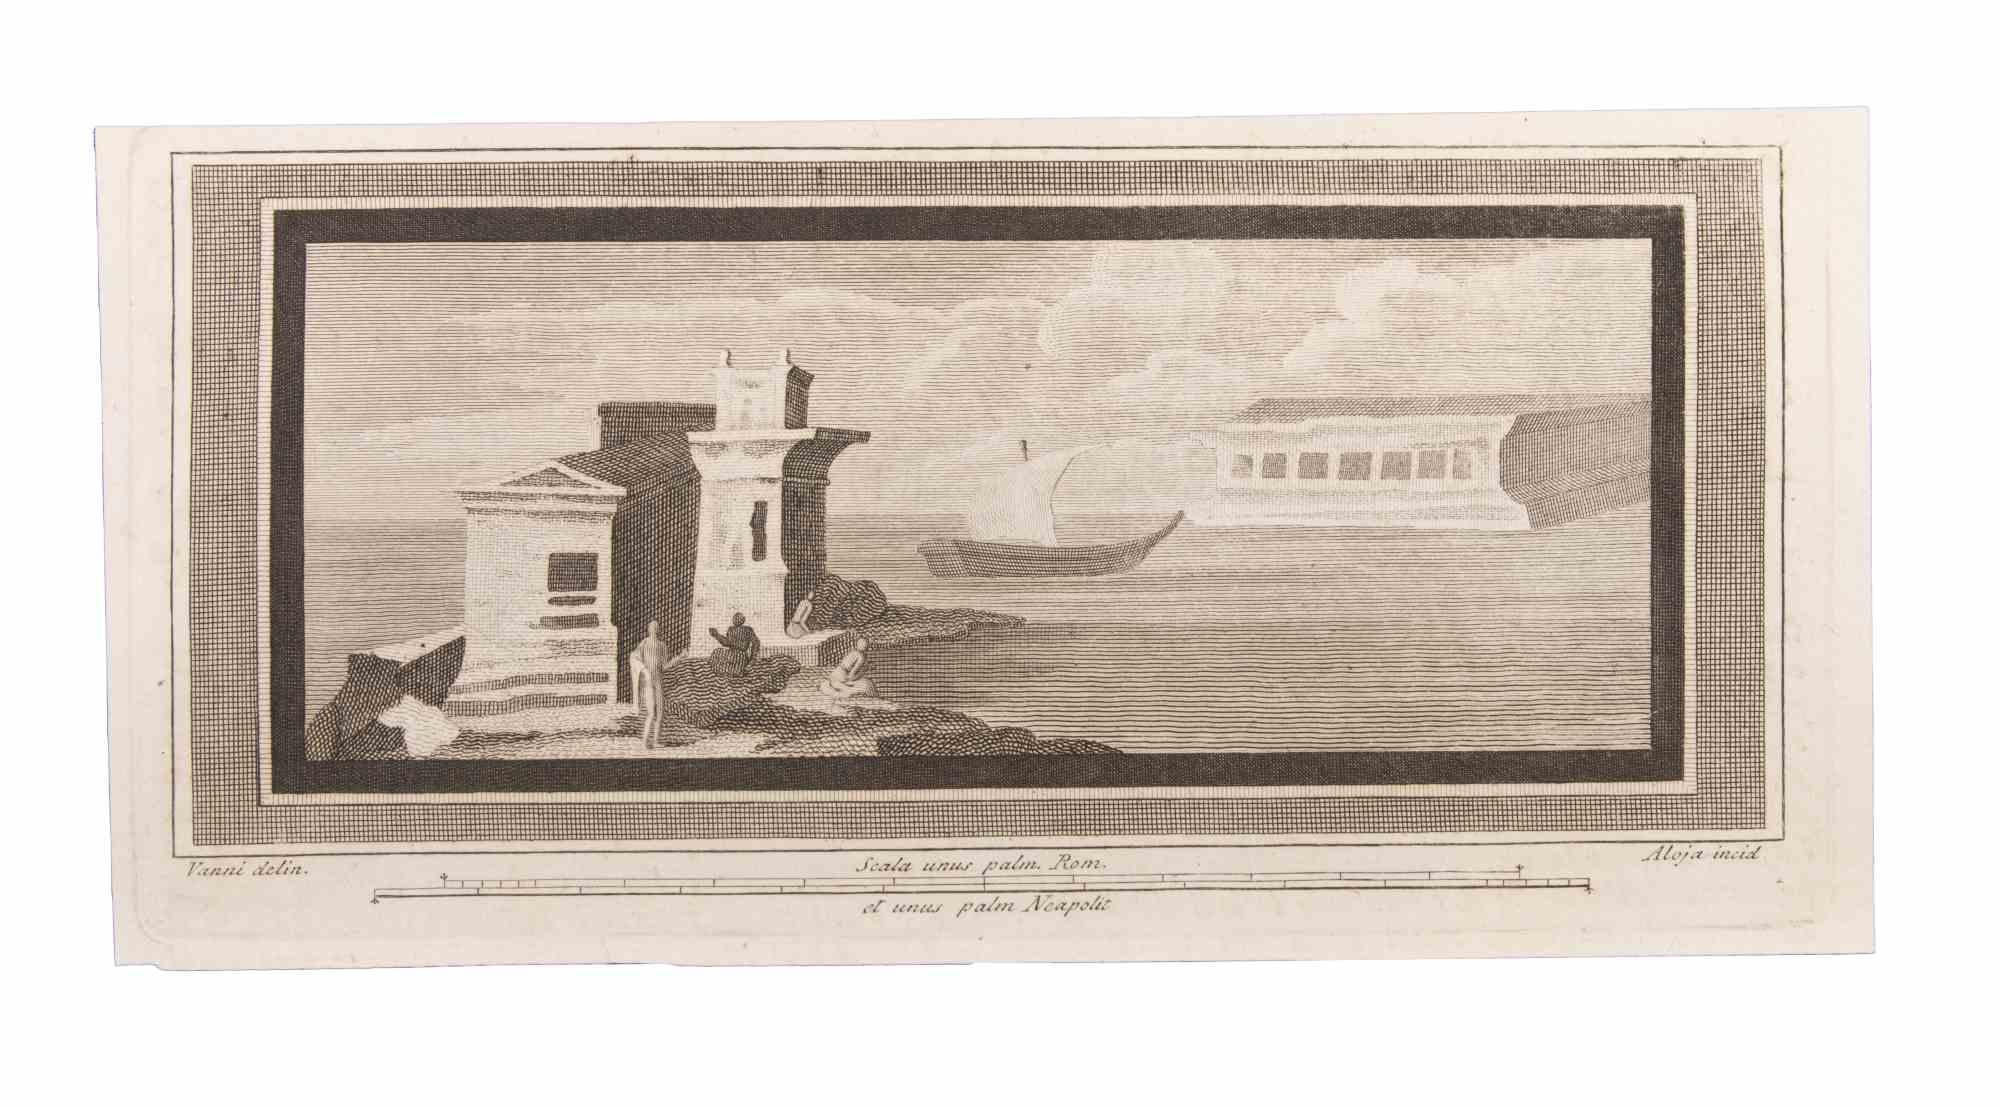 Seascape With Monument and Figures est une eau-forte réalisée par Luigi Aloja (1783-1837).

La gravure appartient à la suite d'estampes "Antiquités d'Herculanum exposées" (titre original : "Le Antichità di Ercolano Esposte"), un volume de huit